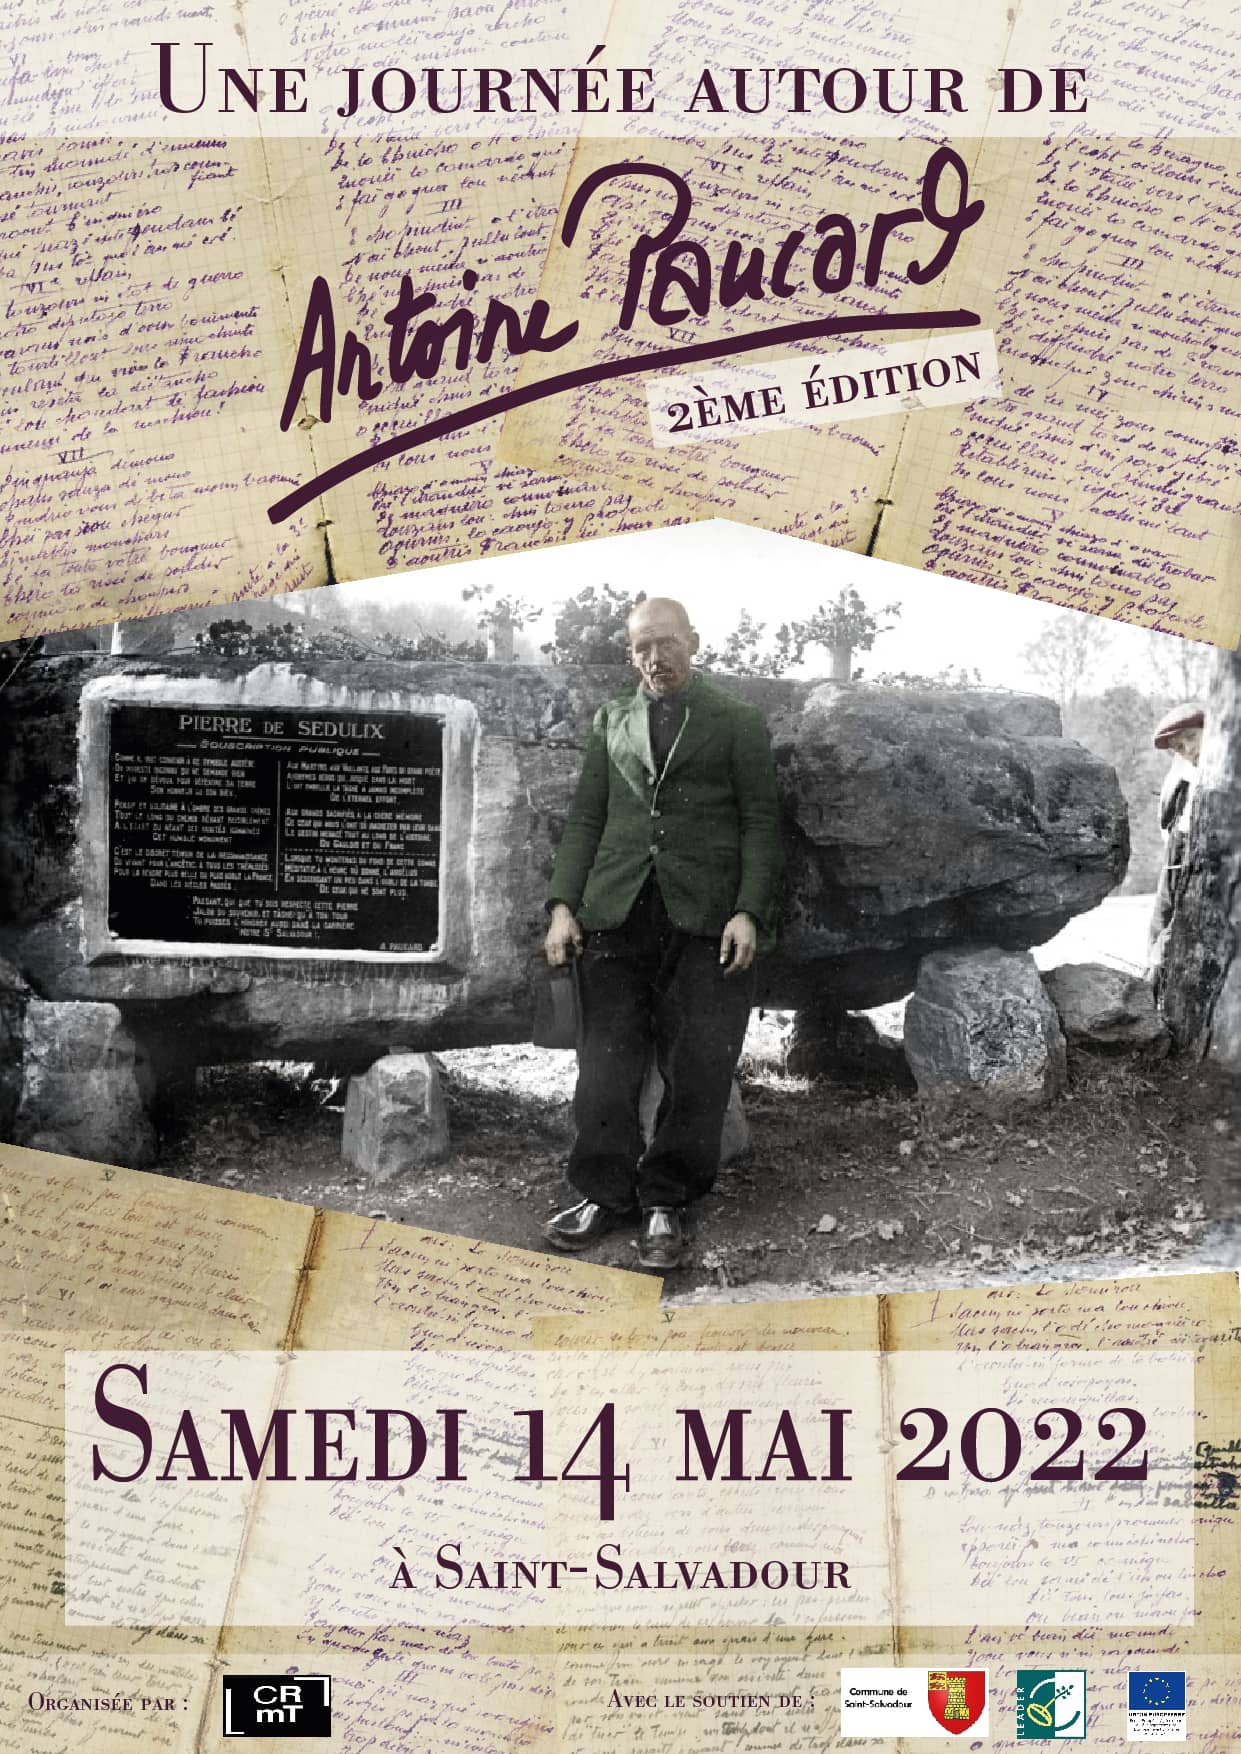 Journée de rencontre autour d’Antoine Paucard – 2e édition